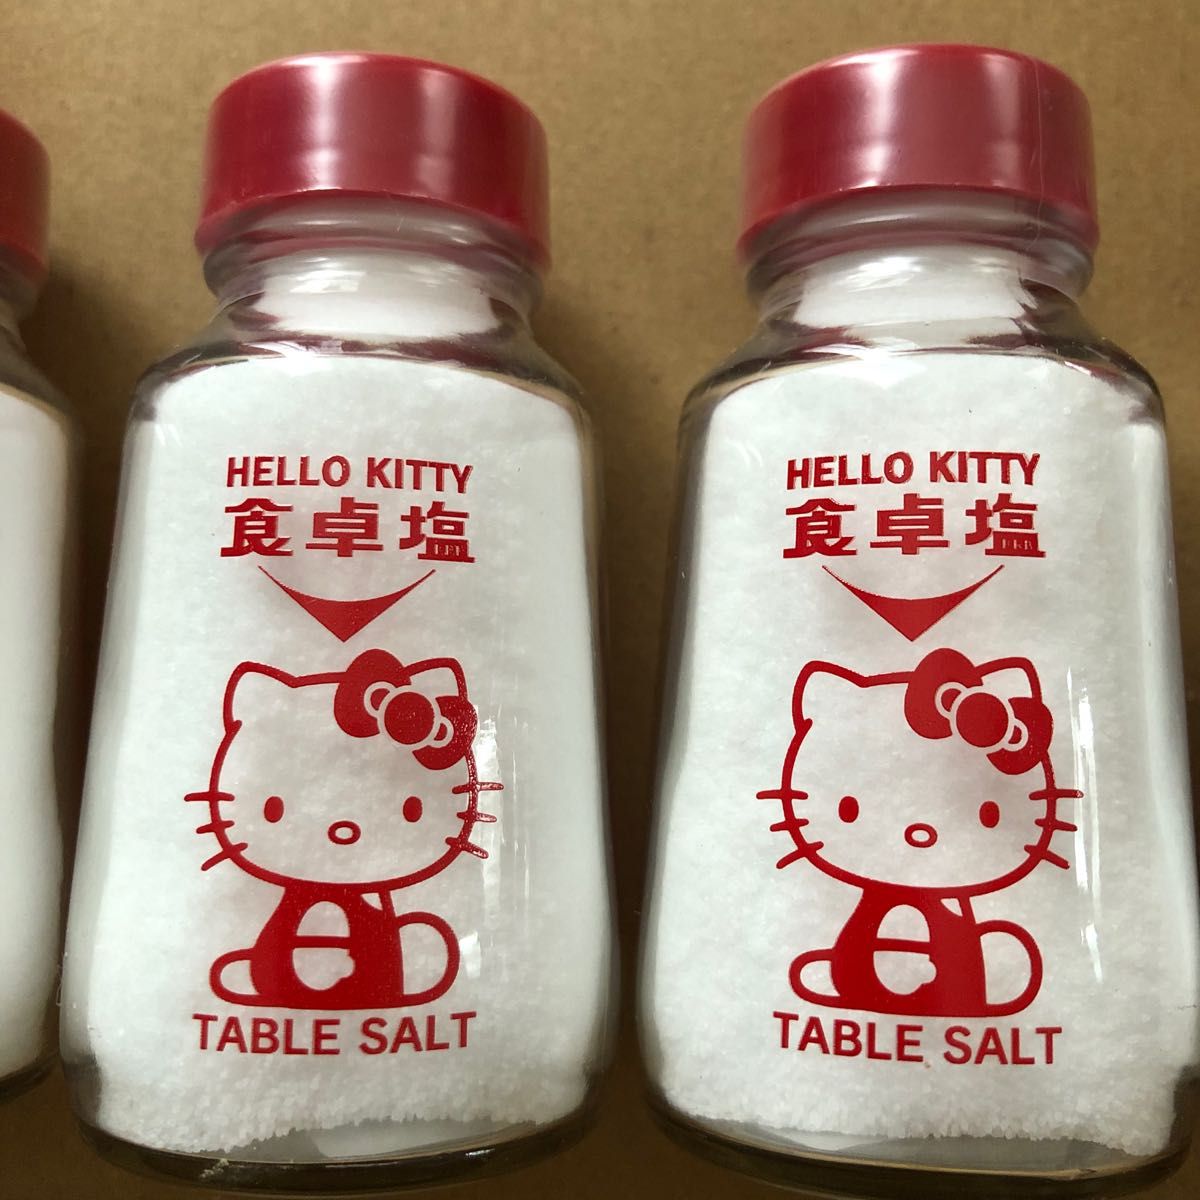 塩事業センター HELLO KITTY 食卓塩 100g - 調味料